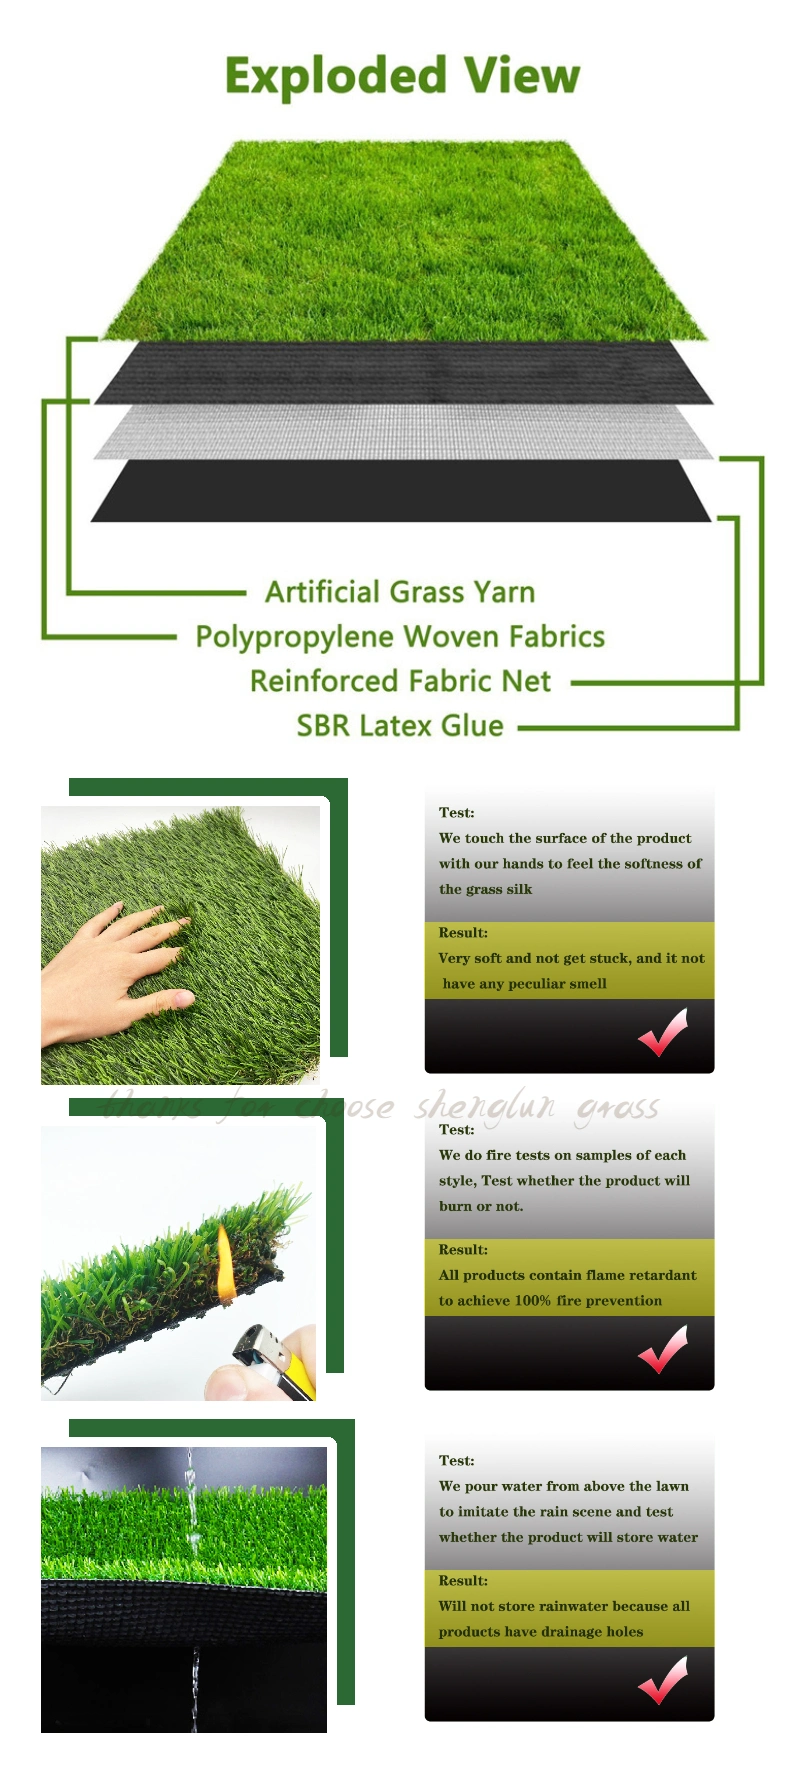 Hebei Factory 10mm-50mm Synthetic Turf Grass Mat Cesped Lawn Landscape/Garden Artificial Grass